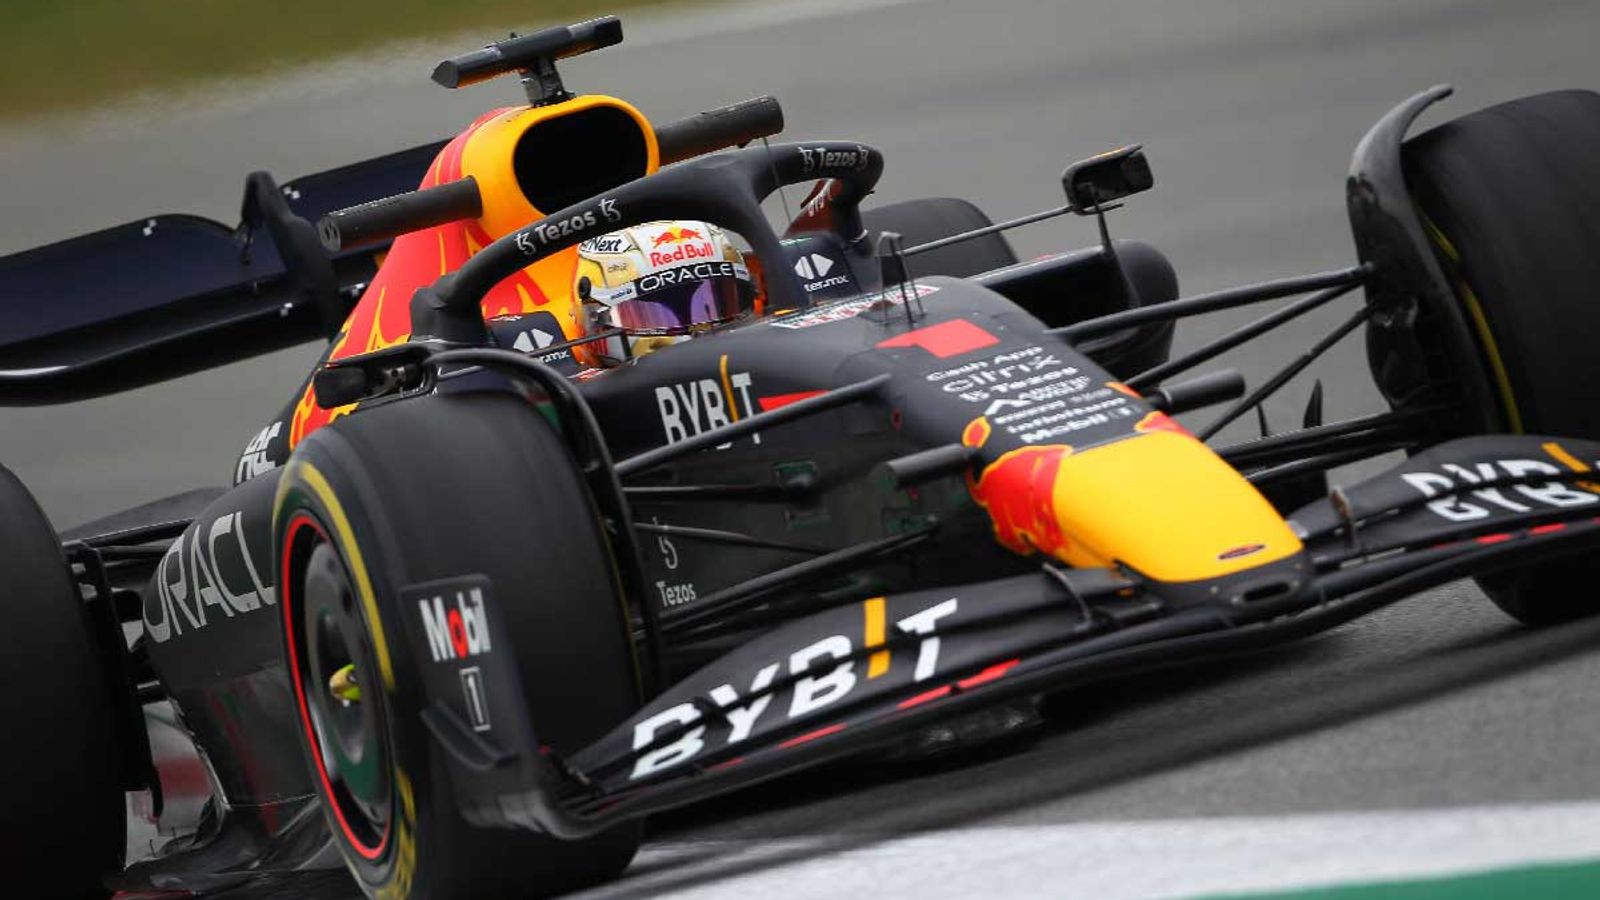 Formel 1 Liveticker Die Testfahrten in Bahrain im Liveblog Formel 1 News Sky Sport